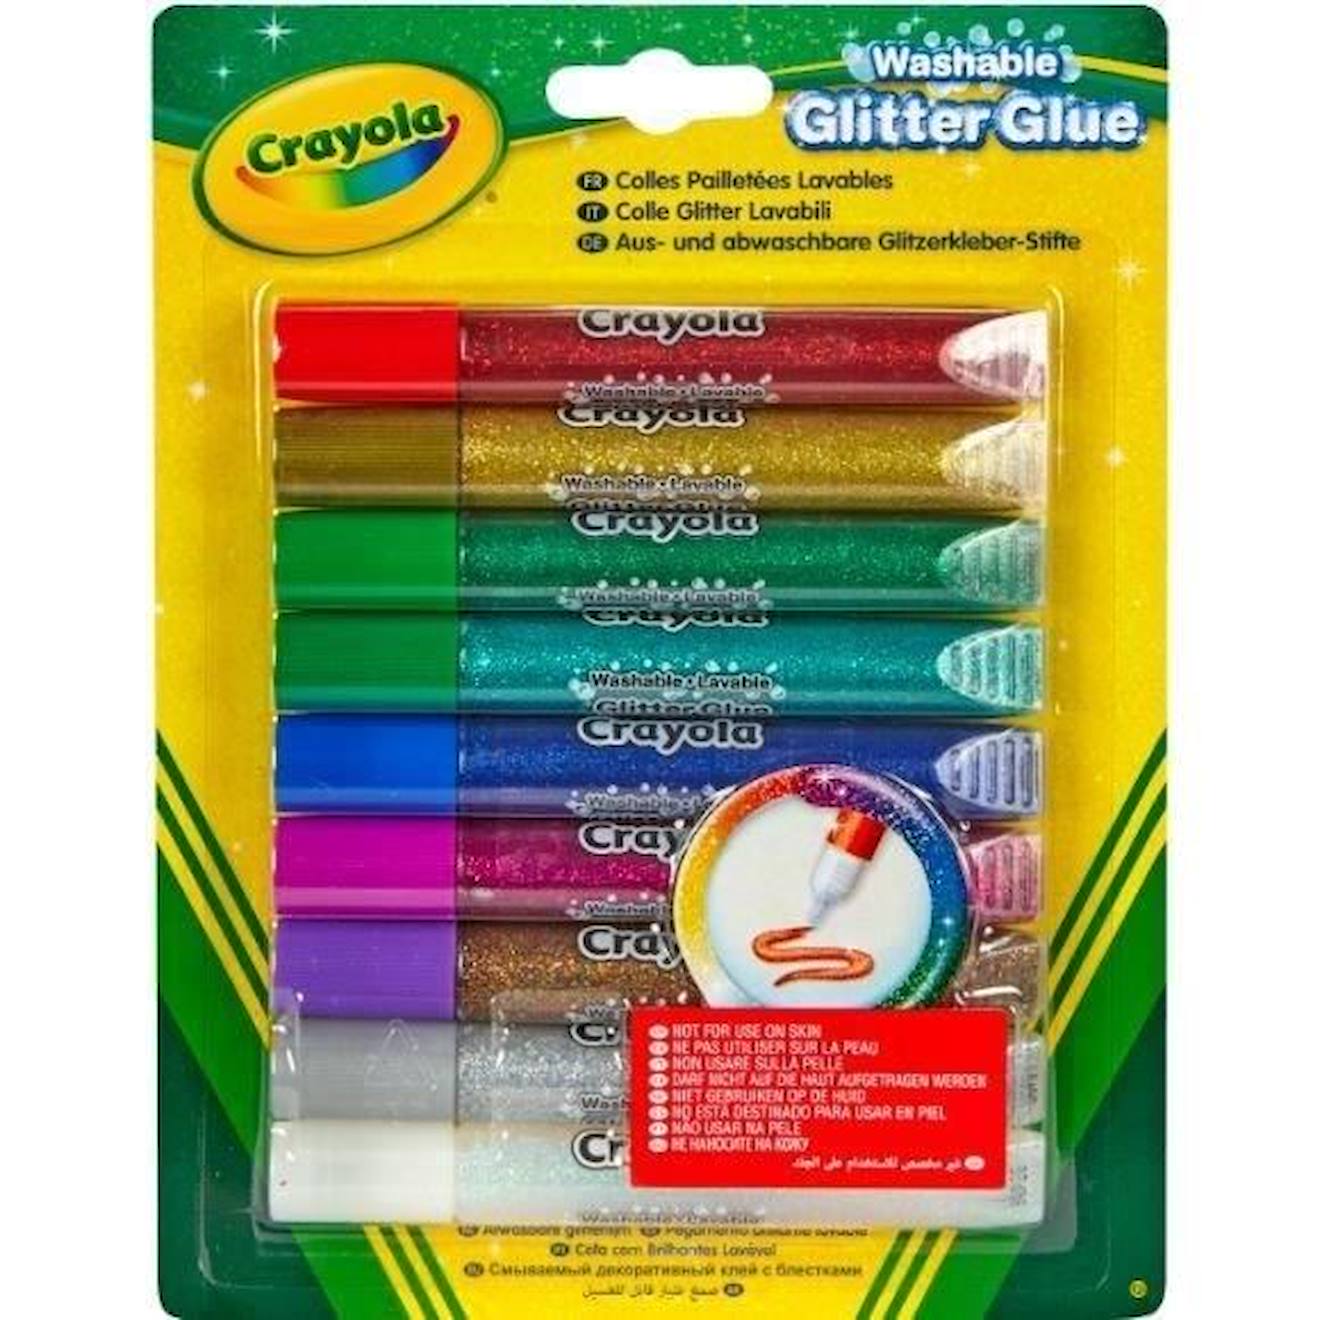 Crayola - 9 Colles Pailletées Lavables Vert